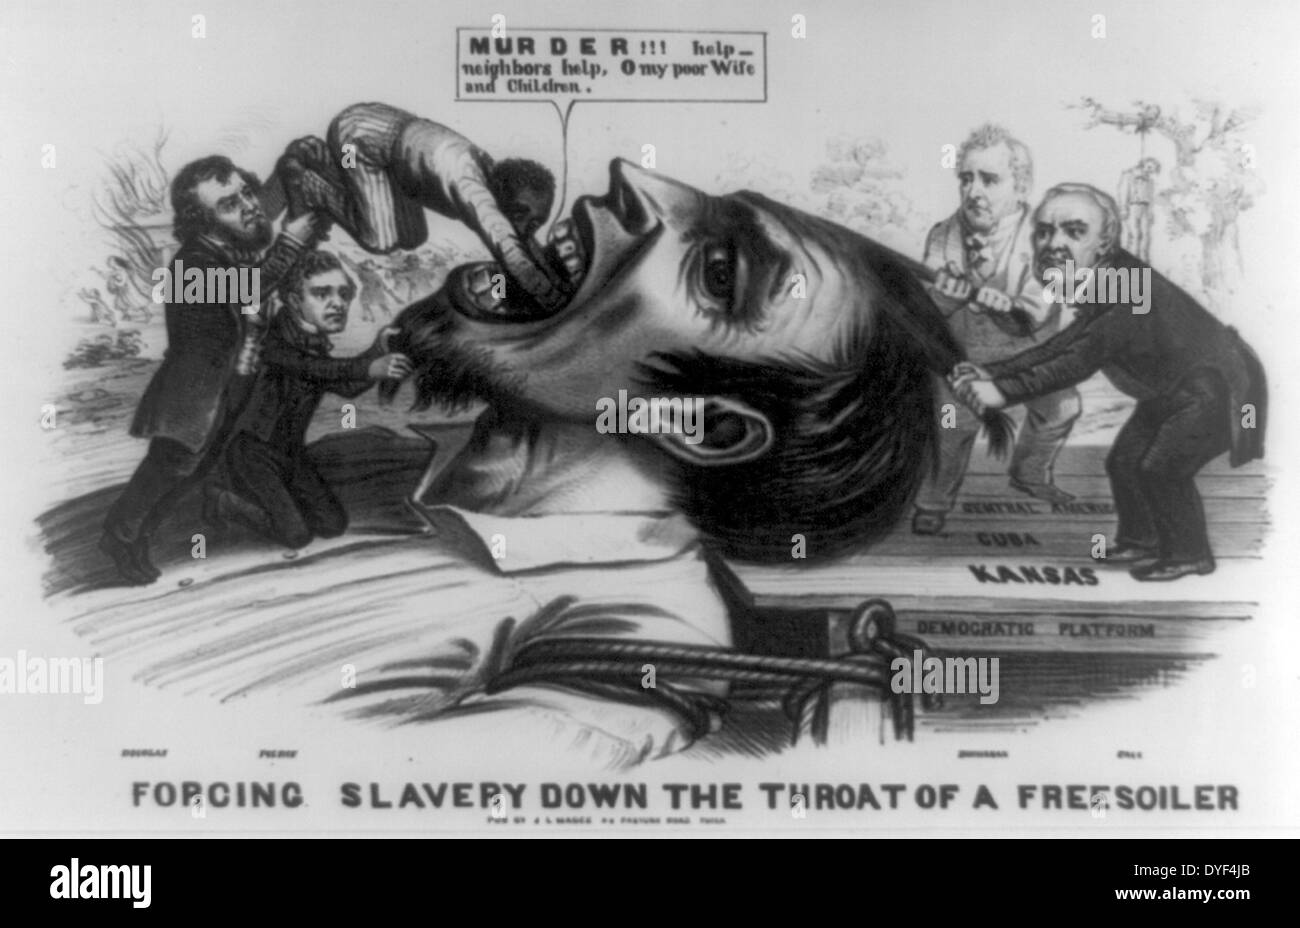 Sklaverei zwingen die Kehle eines Freesoiler 1856. Demokraten waren die Schuld für die Gewalt gegen die Siedler verübt - Sklaverei in Kansas nach dem Kansas-Nebraska Act. Magge John L. Stockfoto